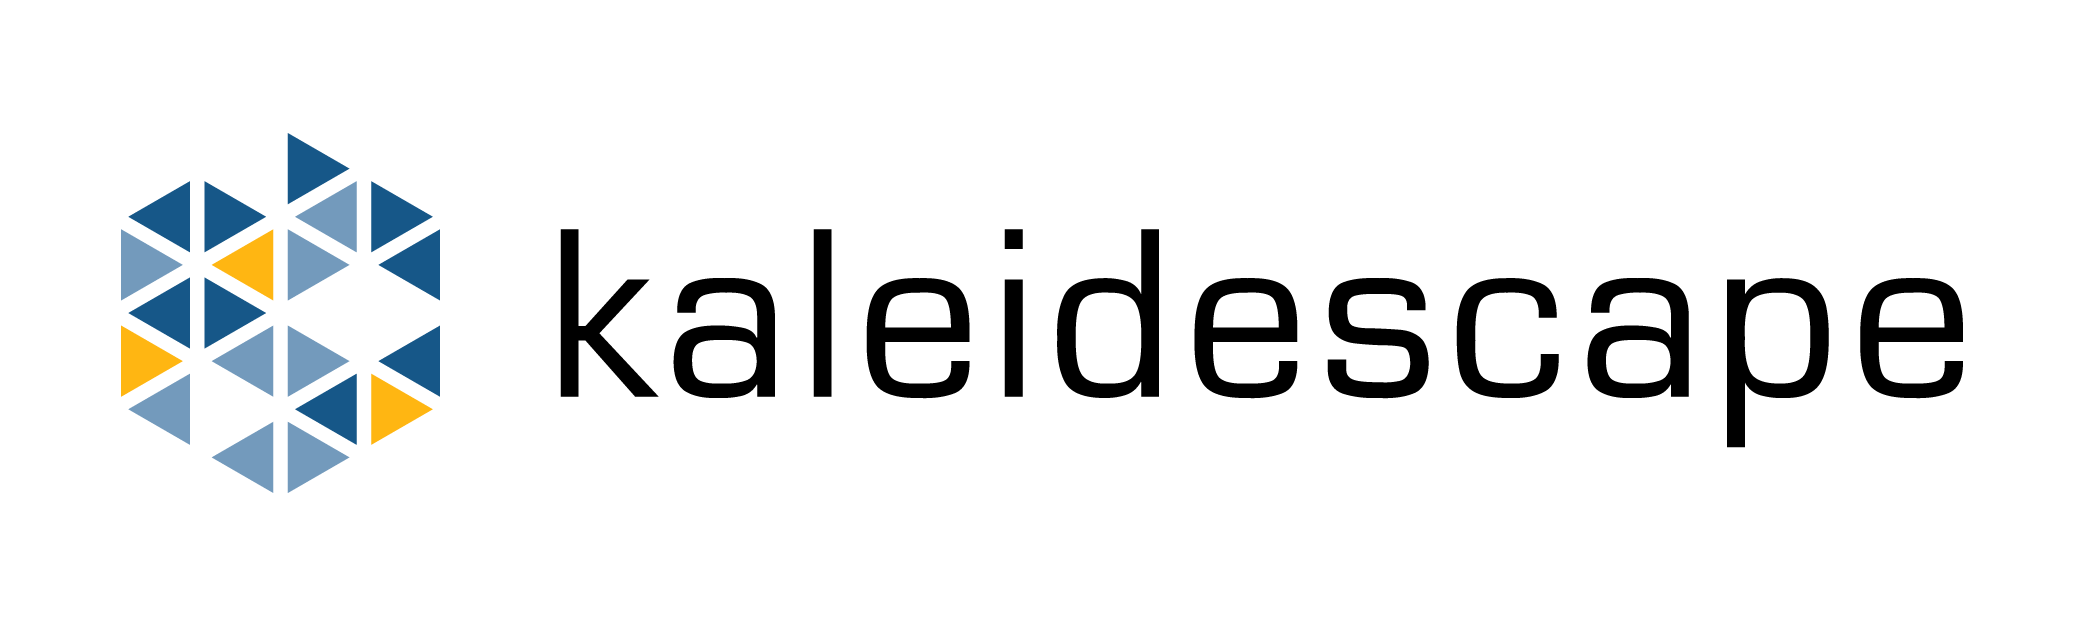 Kaleidescape-RGB-horizontal-on-white